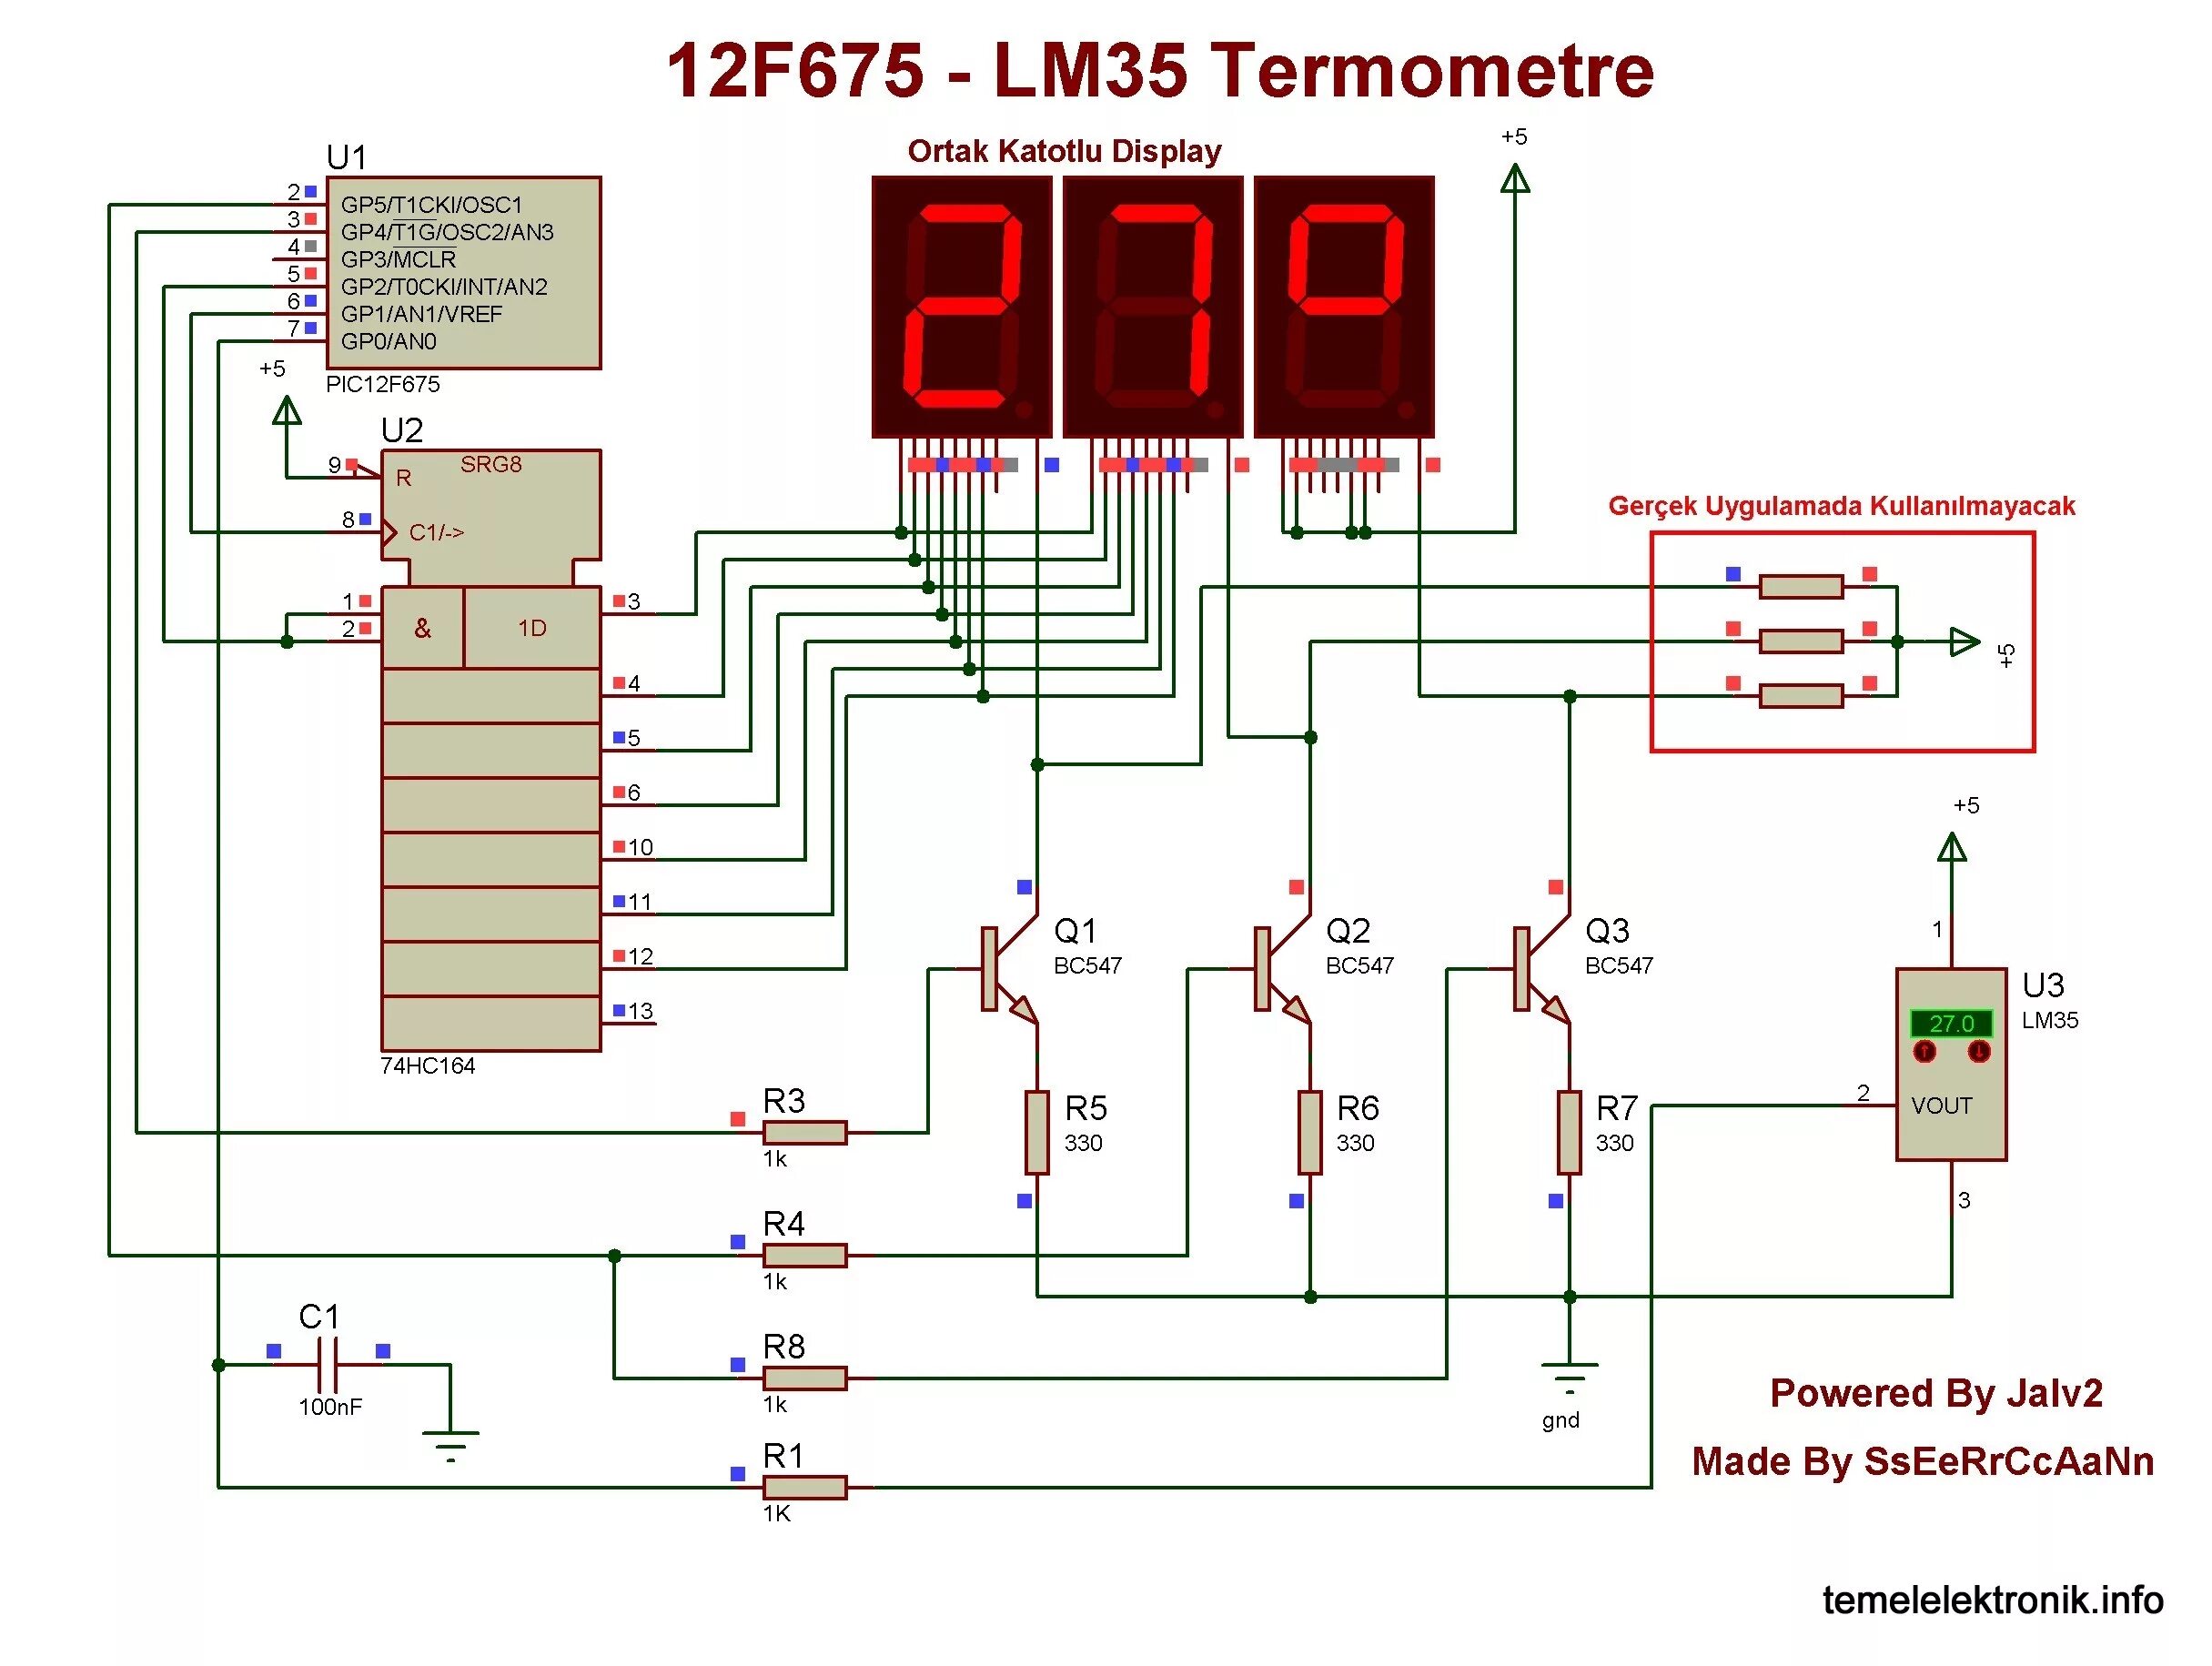 18 f lm. Термометр на pic12f675. Схема термометра на lm35. Ампервольтметр + 12f675 + LCD. Кондуктометрический датчик на 12f675.